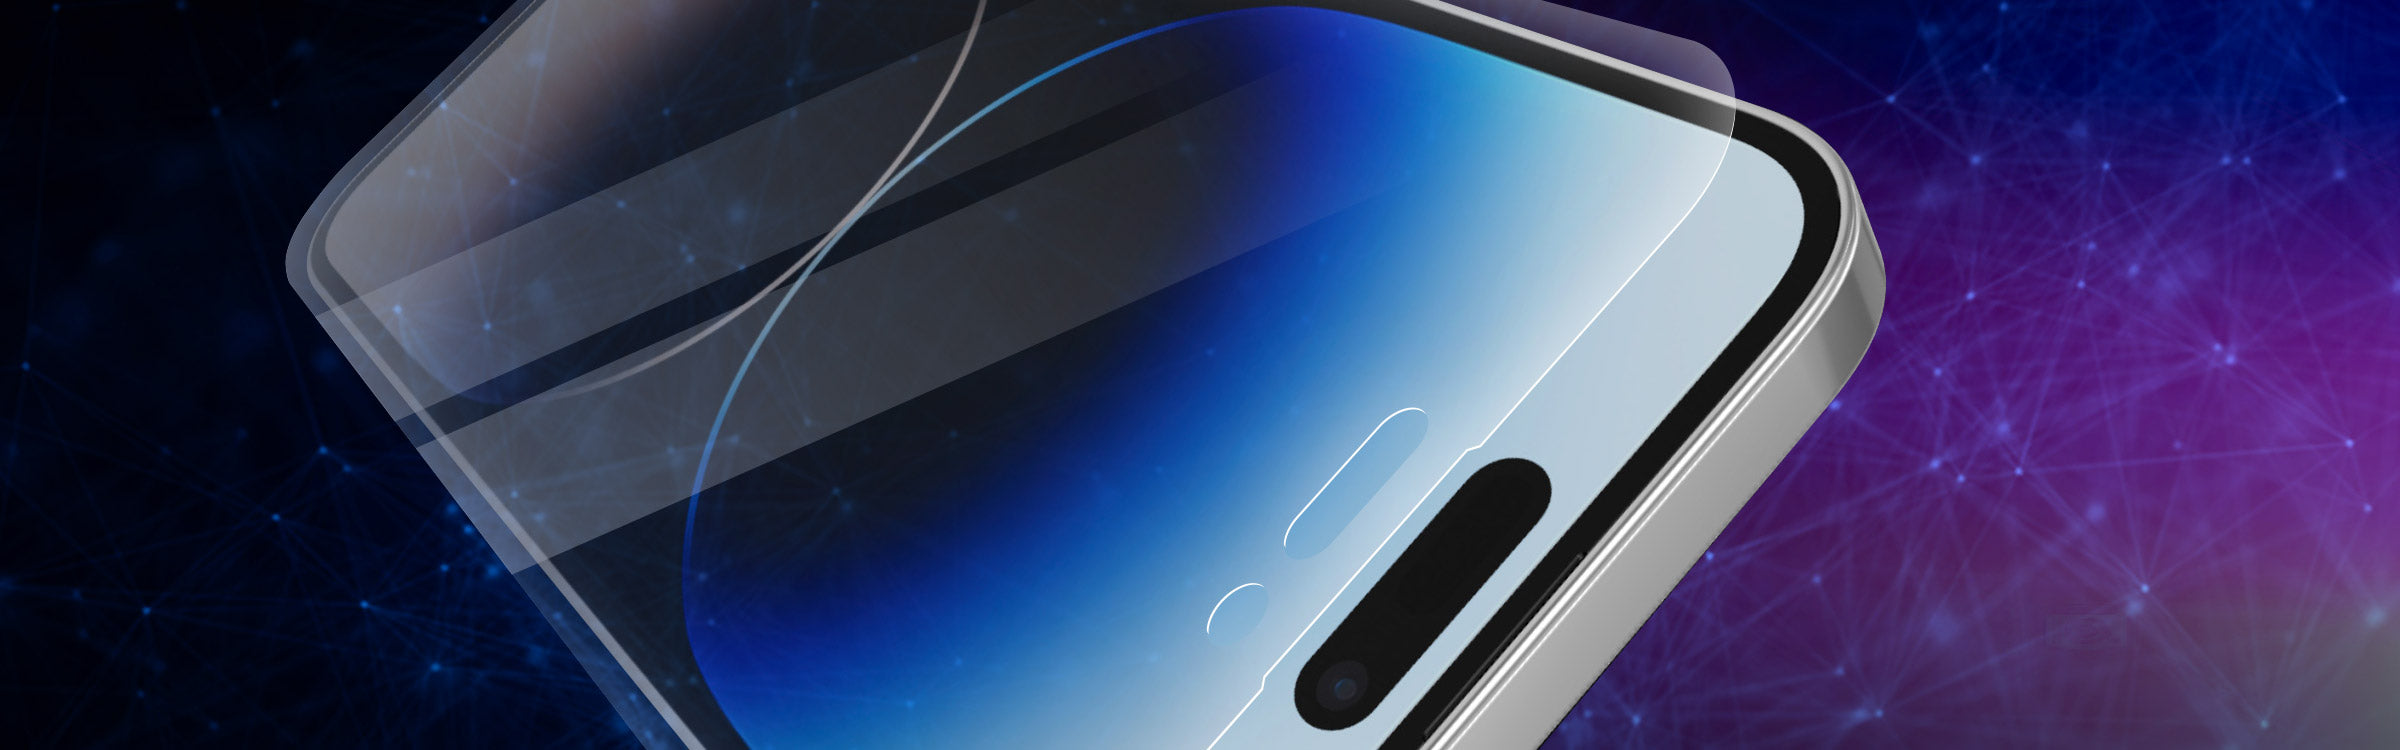 Protecteur d'écran en verre trempé de iShieldz pour Samsung Galaxy